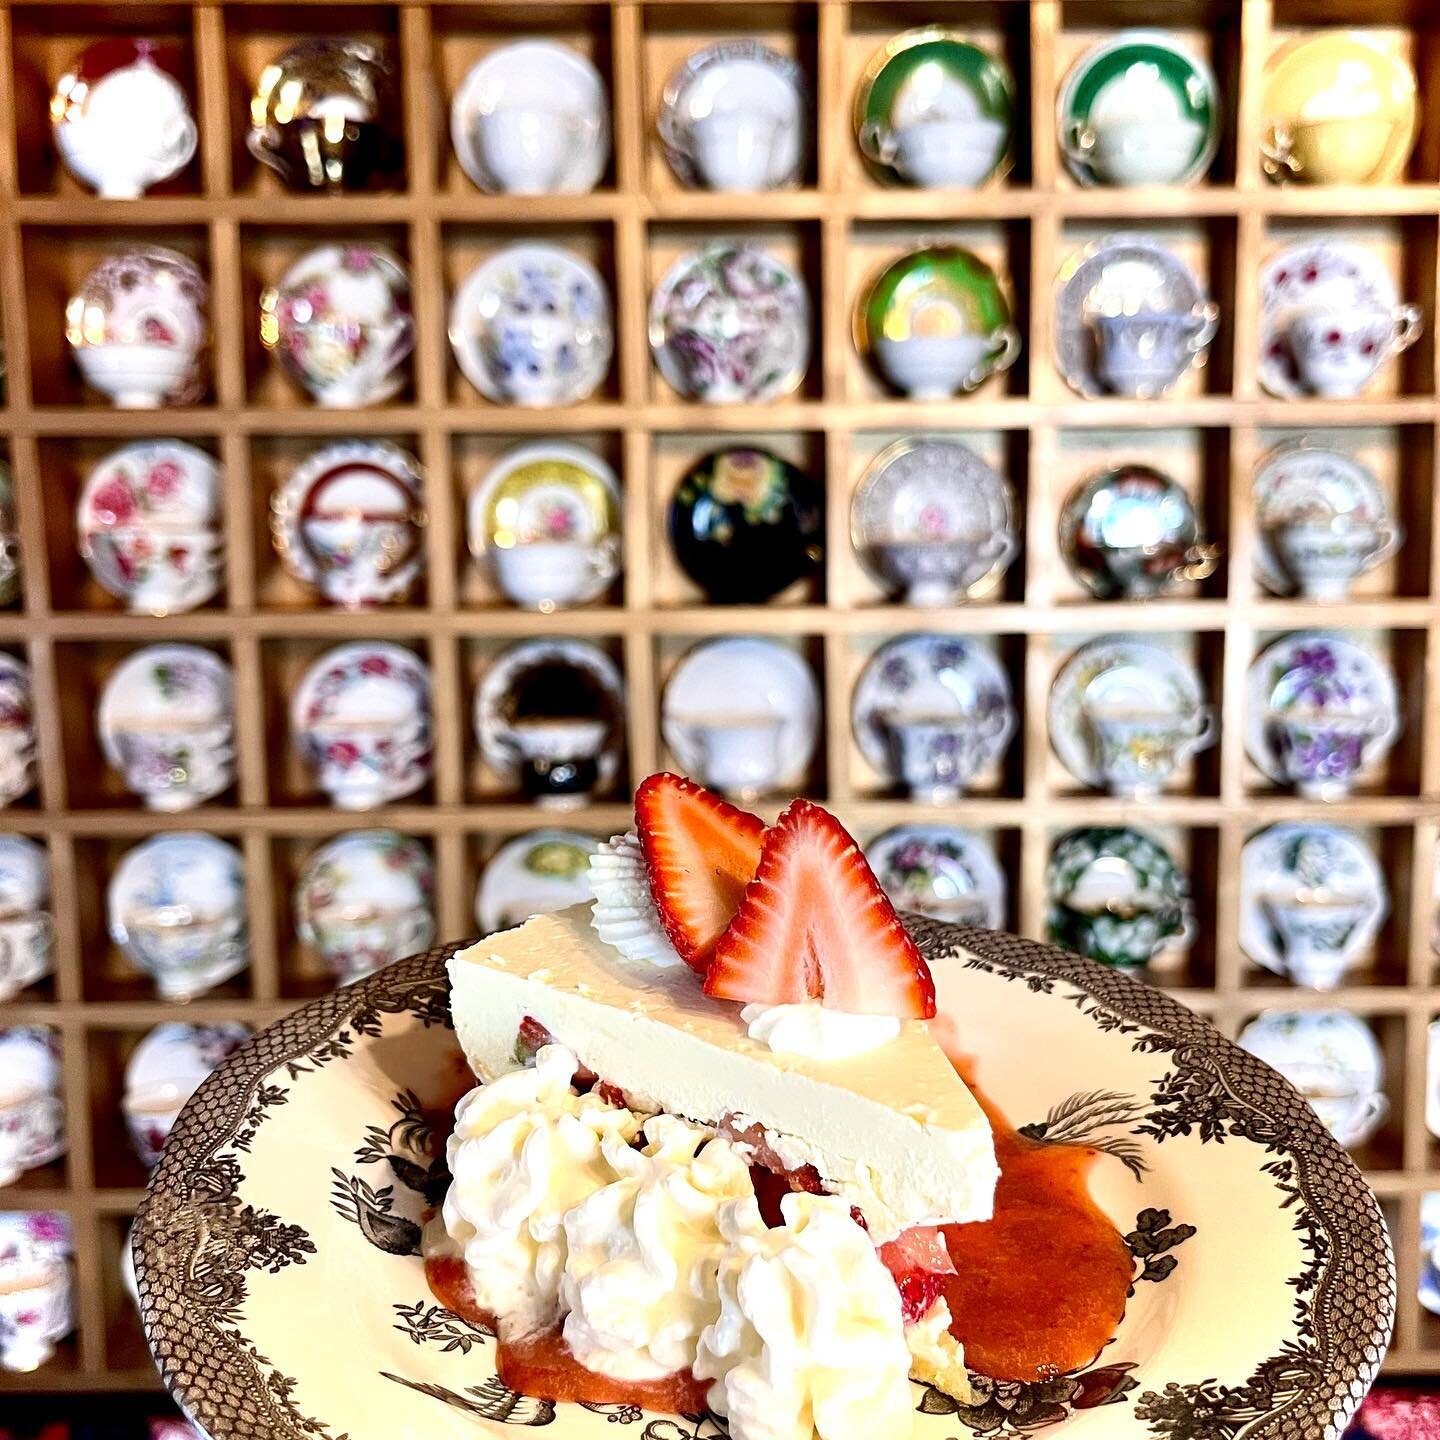 Notre FRAISIER est notre dessert sp&eacute;cial cette fin de semaine! Venez l&rsquo;essayer!

Our famous #fraisier is back as a weekend special! Come try it out!